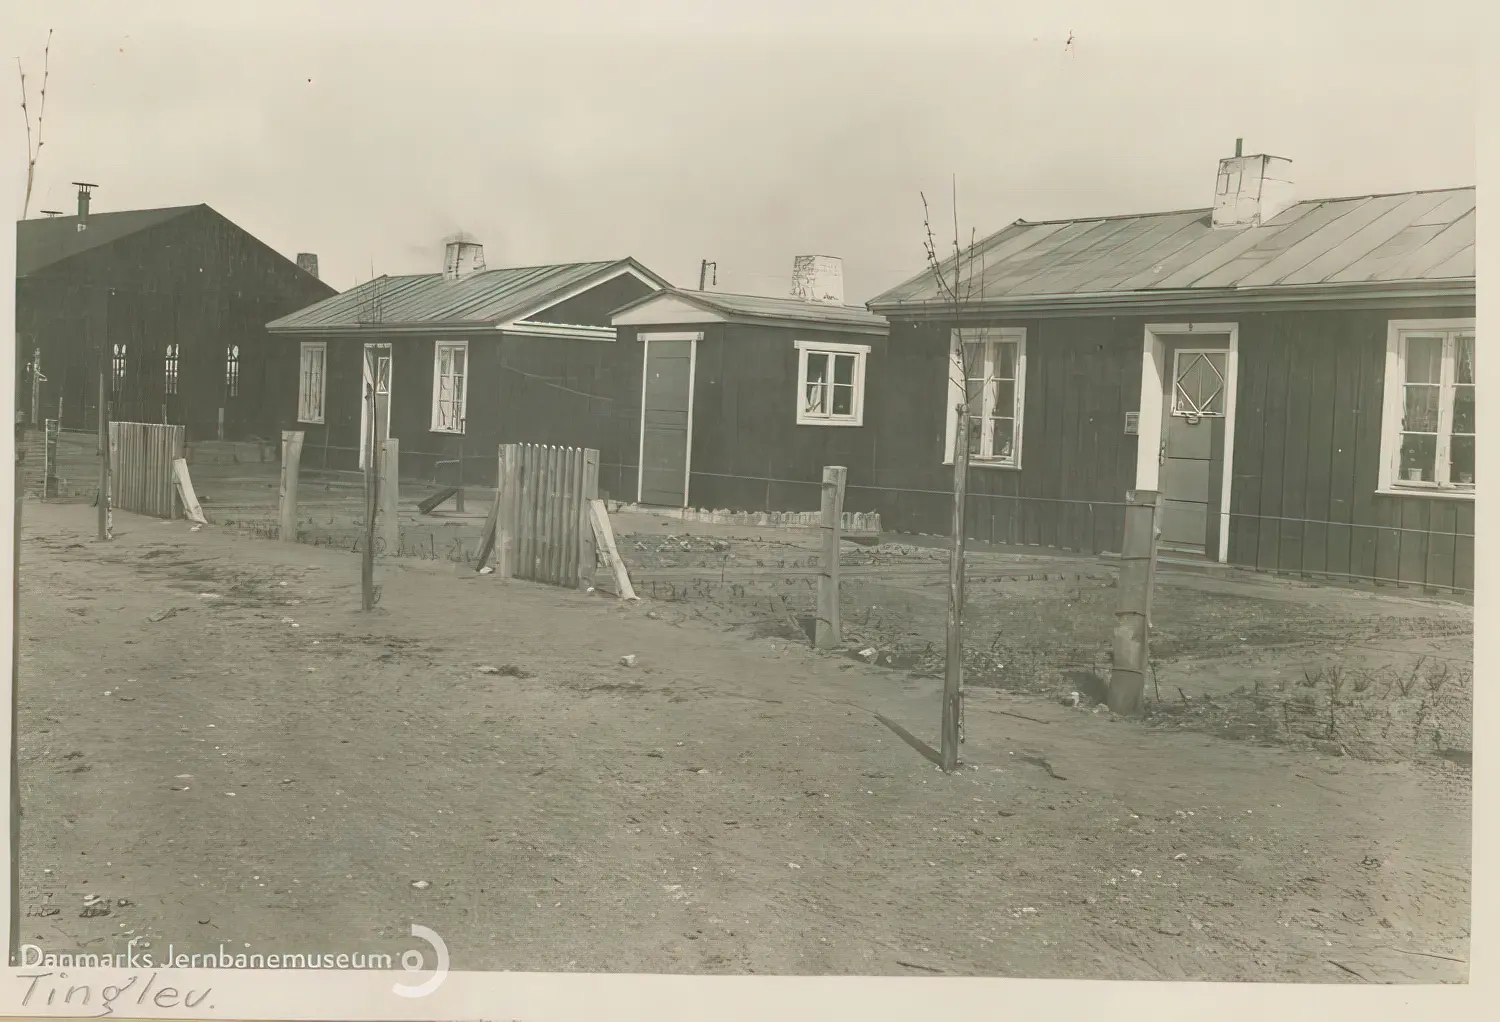 Billede af midlertidige boliger for jernbanefolk til Tinglev Station efter Genforeningen. Svellehuse på Birkeallé, set mod øst. I baggrunden tv. lokomotivremisen.